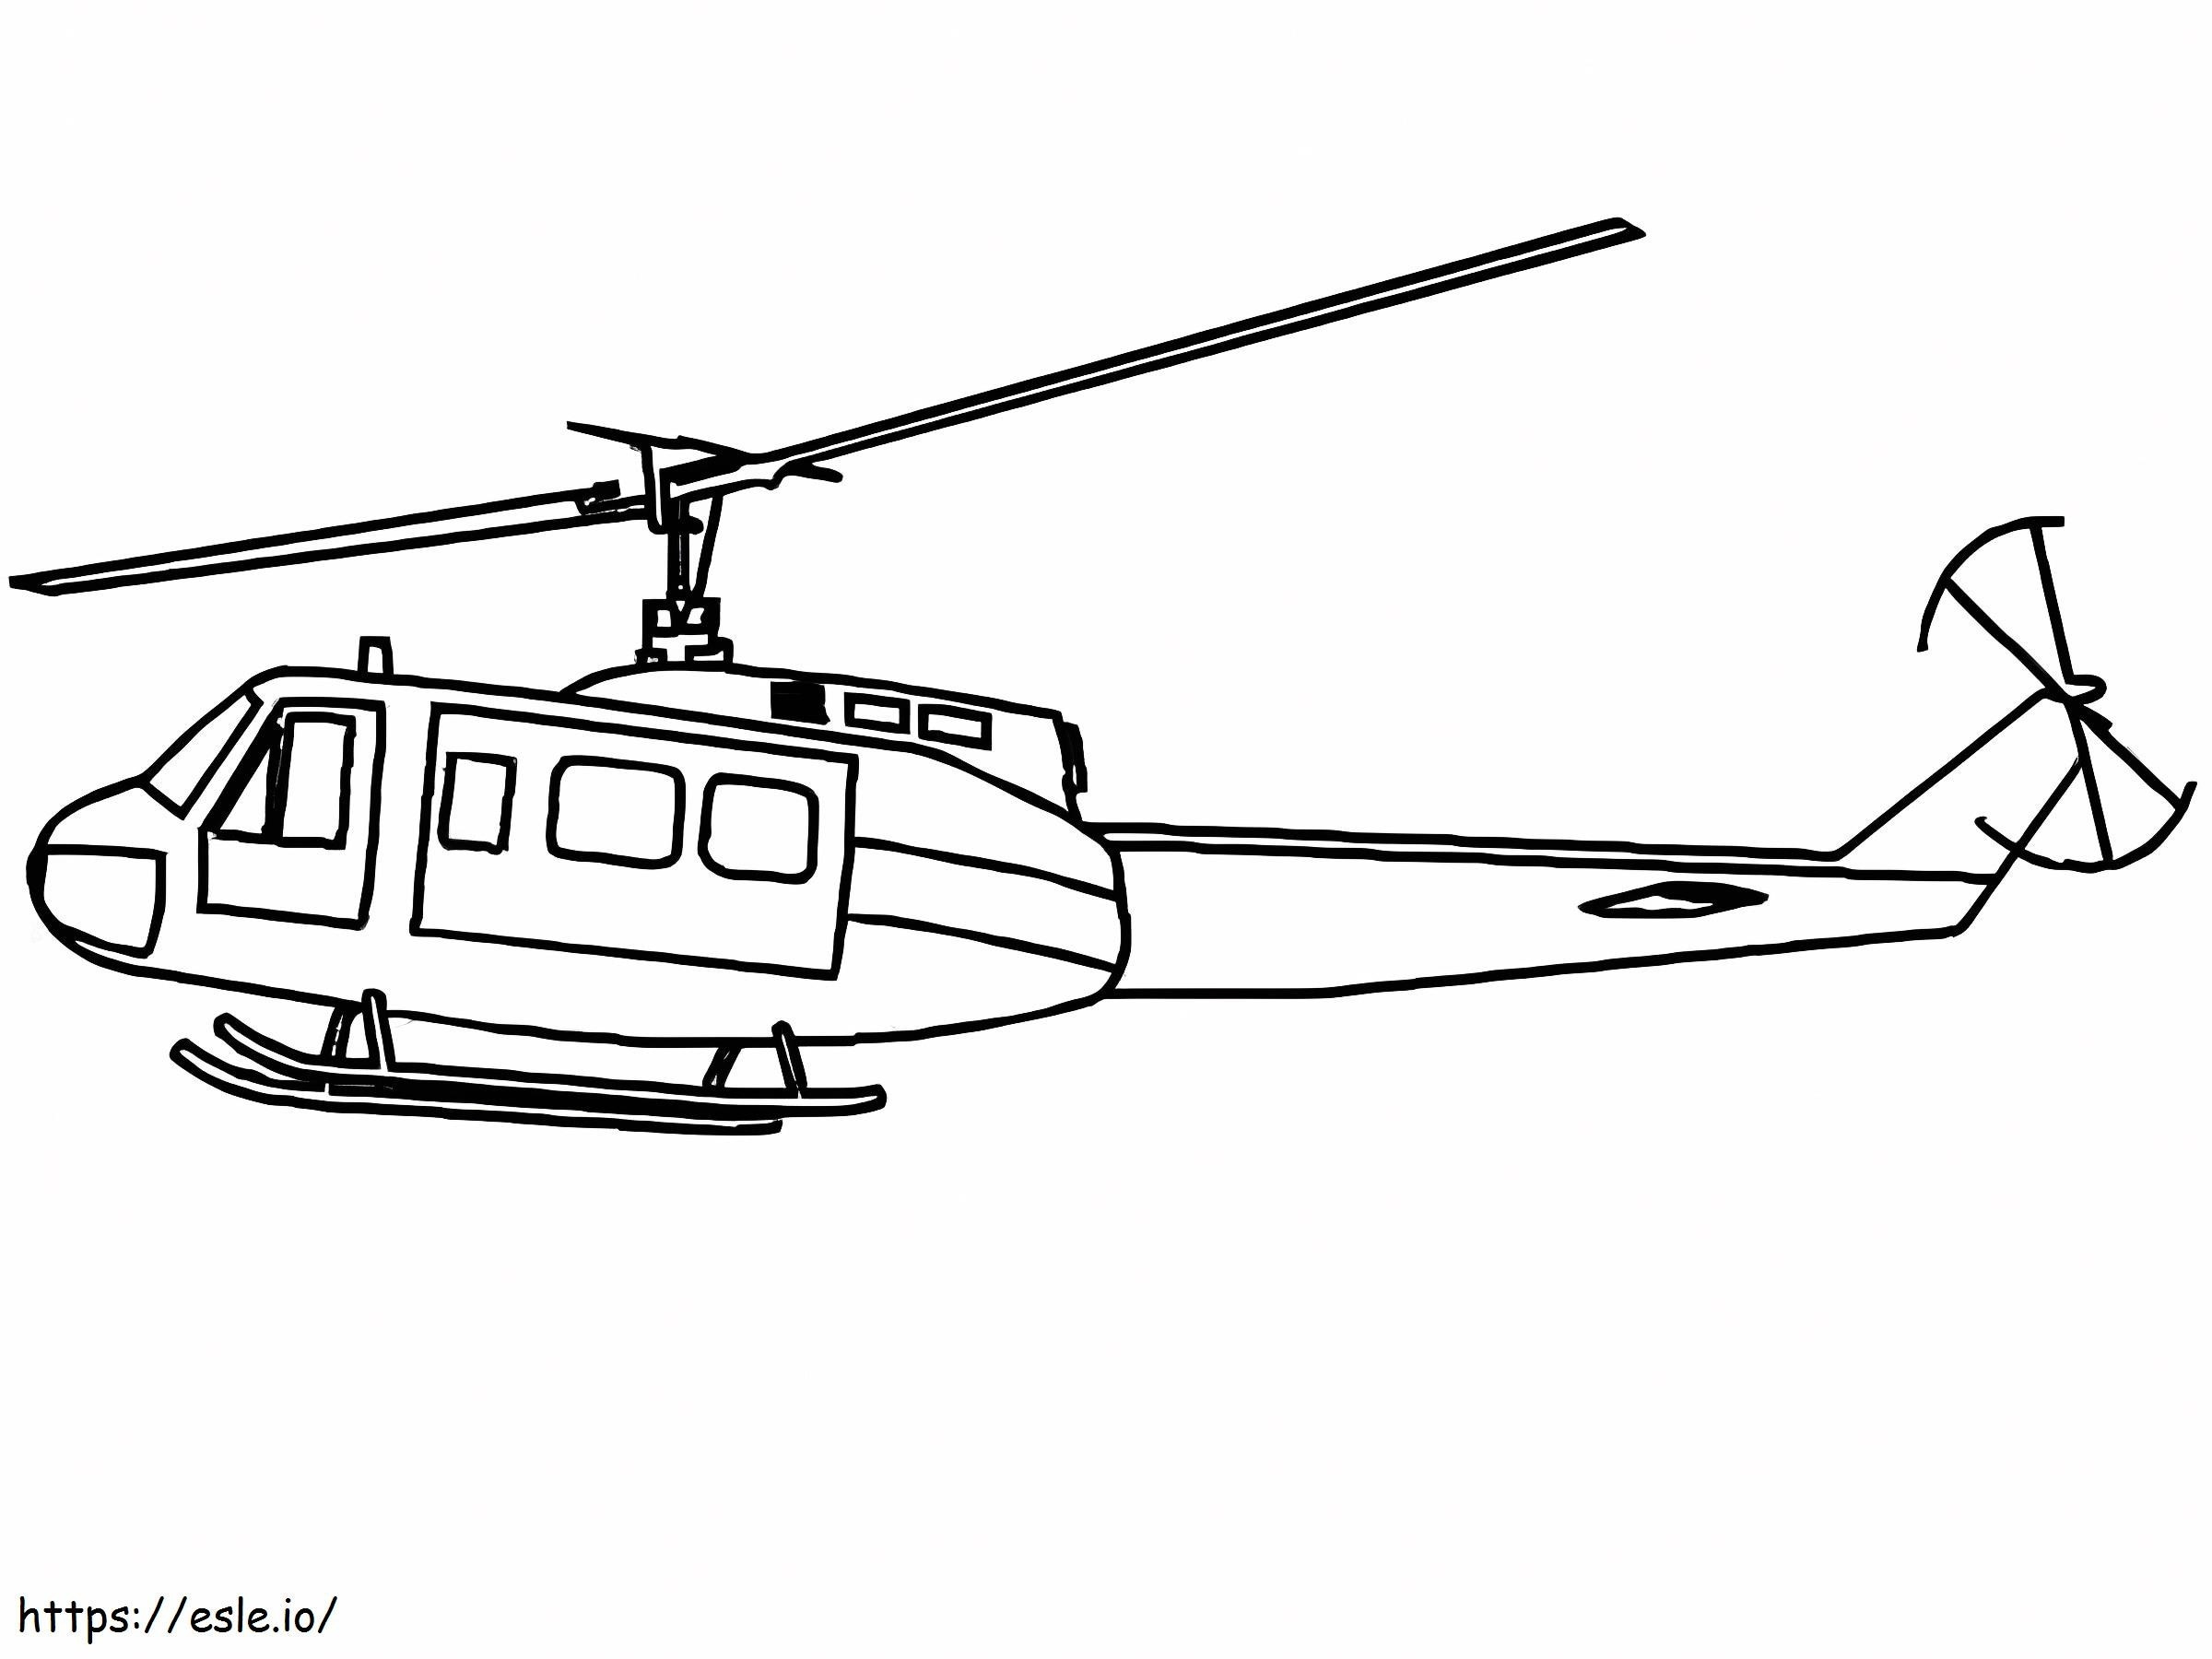 Desen elicopter militar de colorat